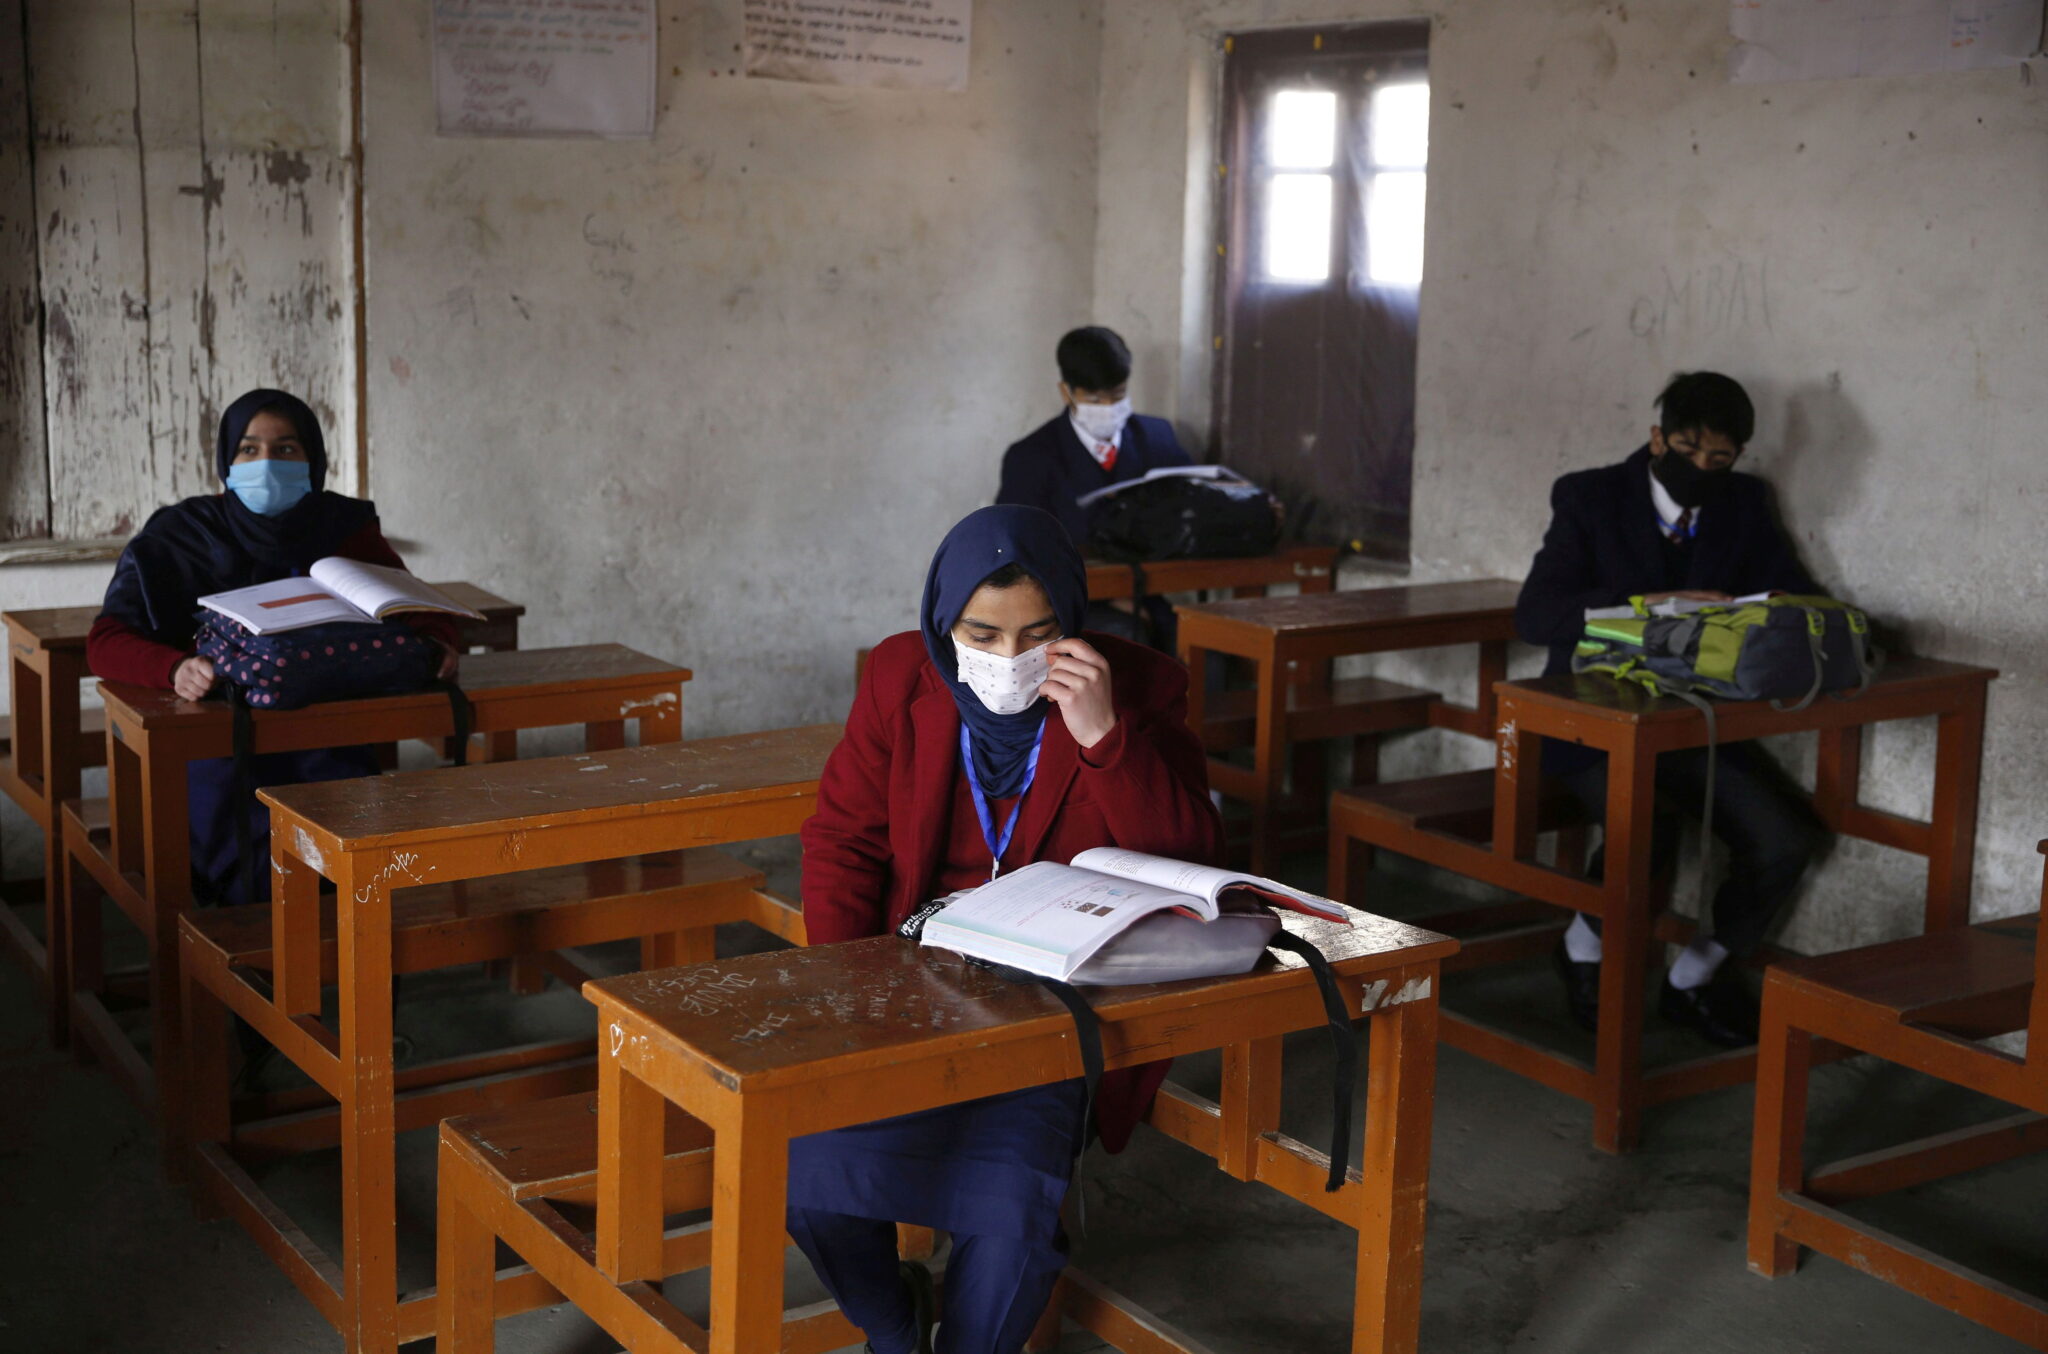 Kaszmirscy uczniowiew szkole w Srinagarze, letniej stolicy indyjskiego Kaszmiru, fot. EPA / FAROOQ KHAN 